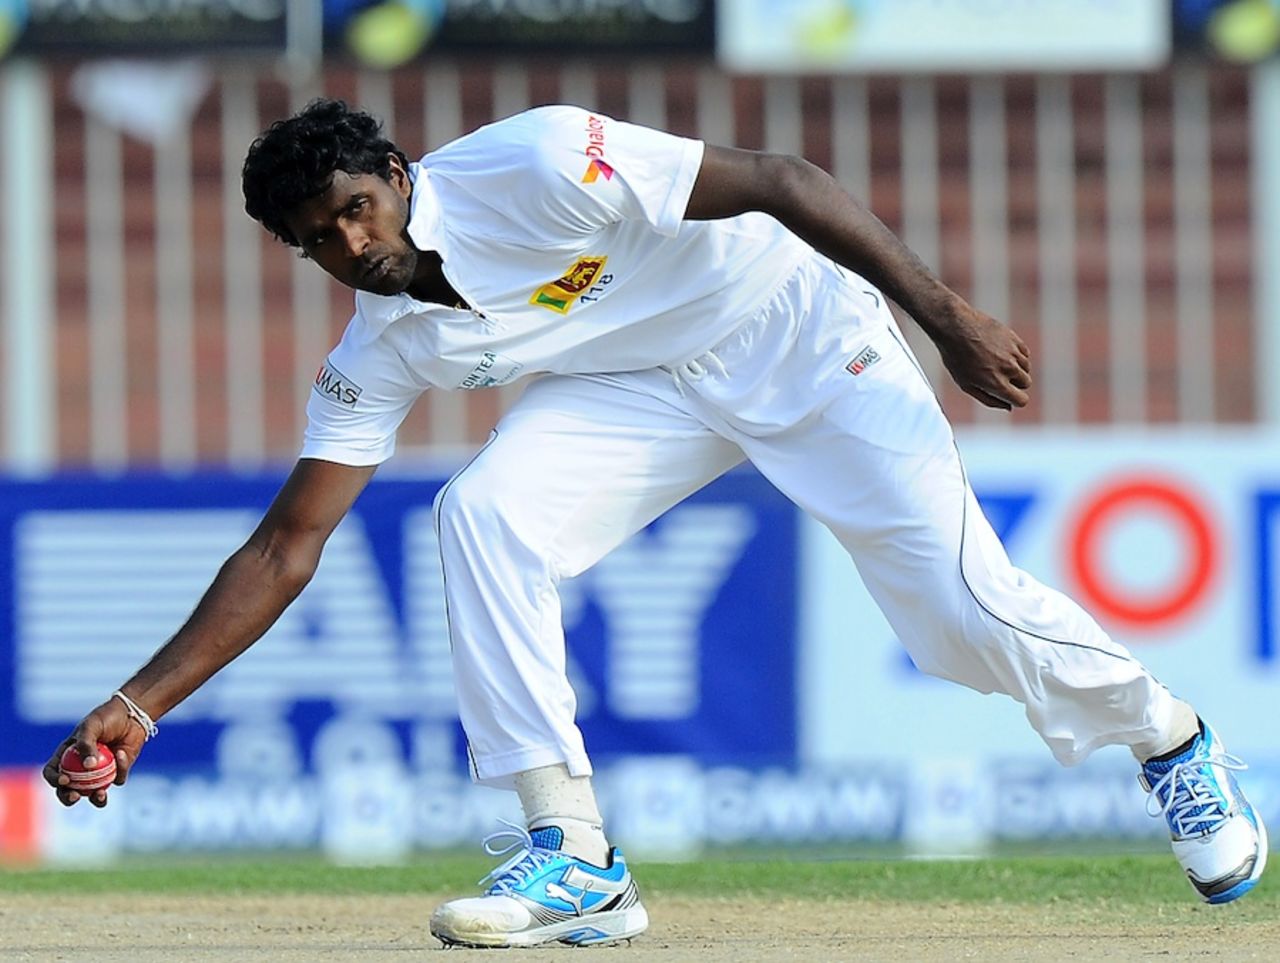 Shaminda Eranga fields, Pakistan v Sri Lanka, 3rd Test, Sharjah, 3rd day, January 18, 2014